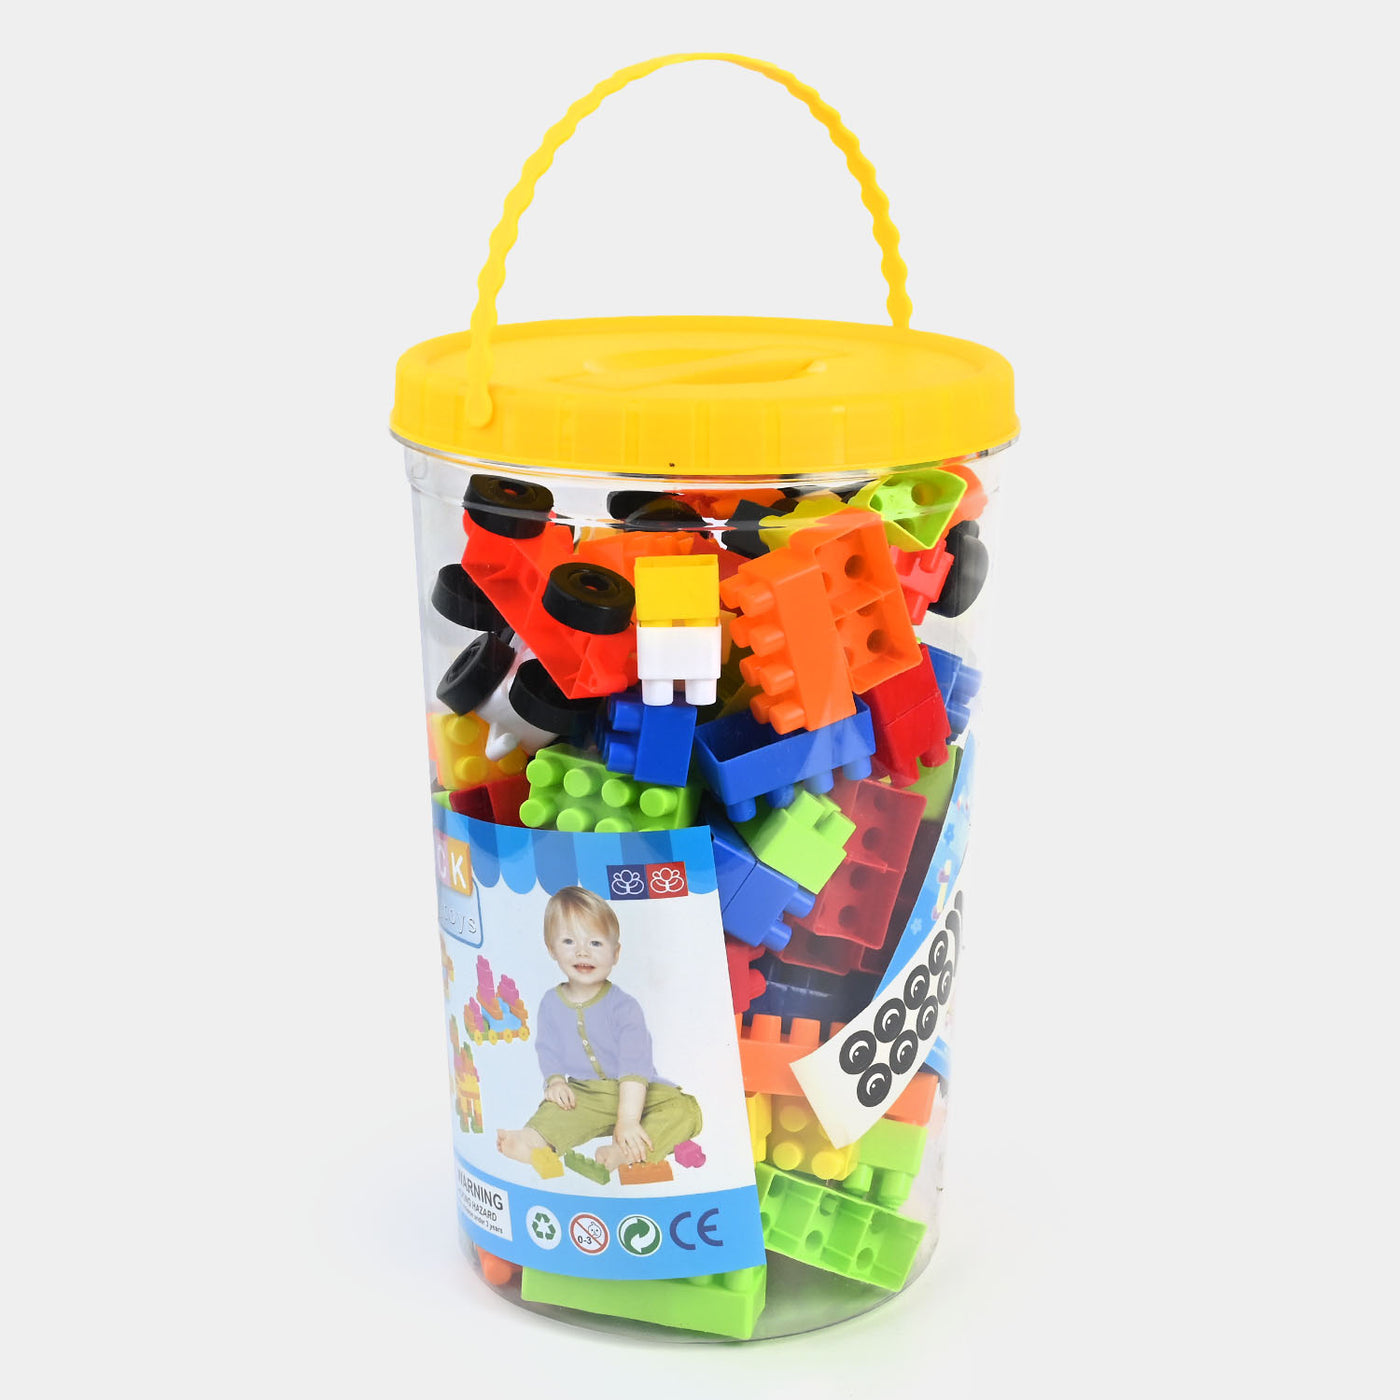 Building Blocks Toys Set For Kids | 170PCs